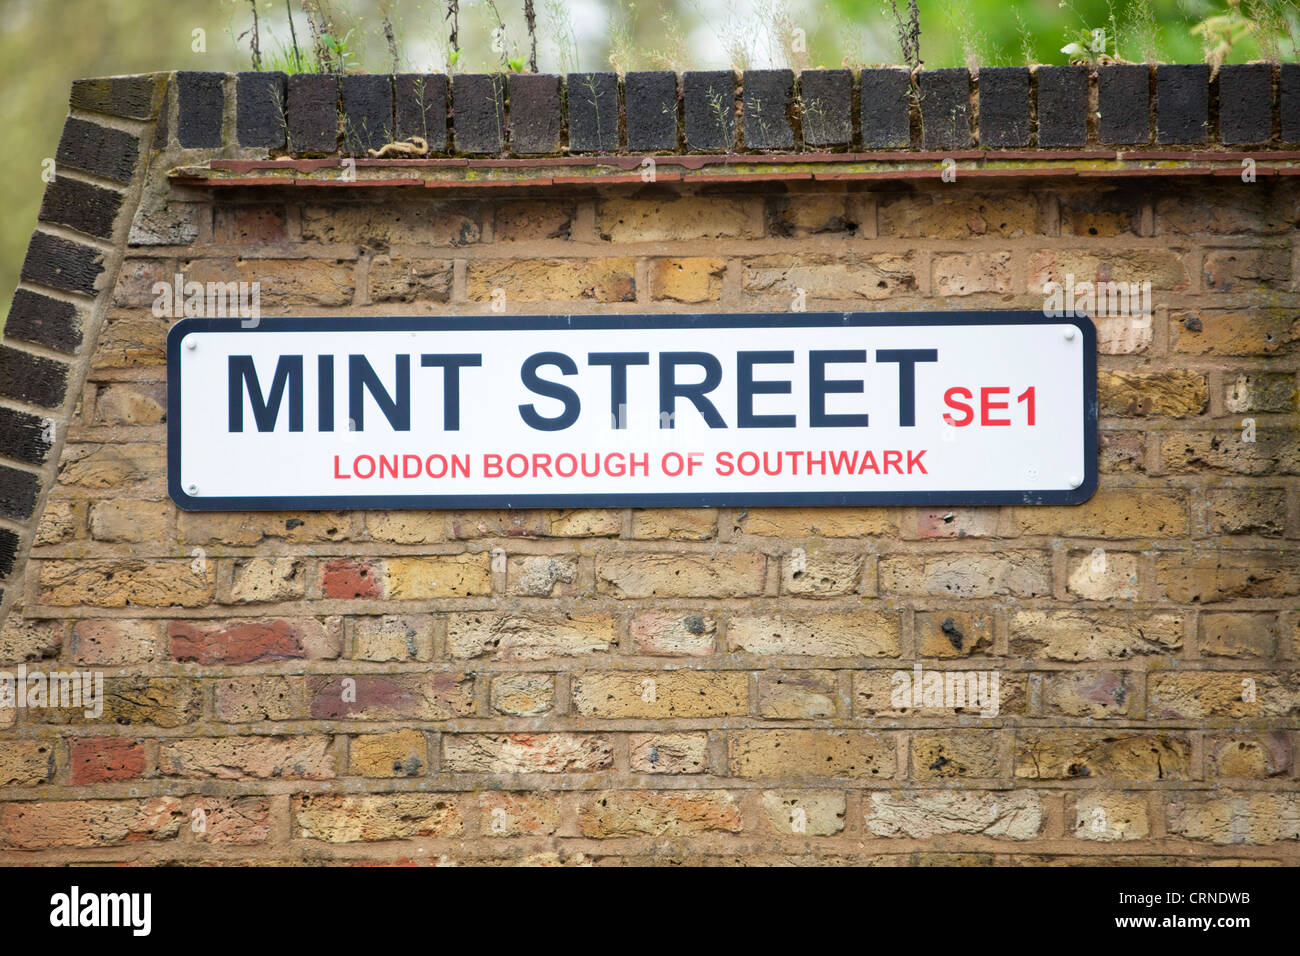 Mint Street SE1 road sign dans le London Borough of Southwark. Banque D'Images